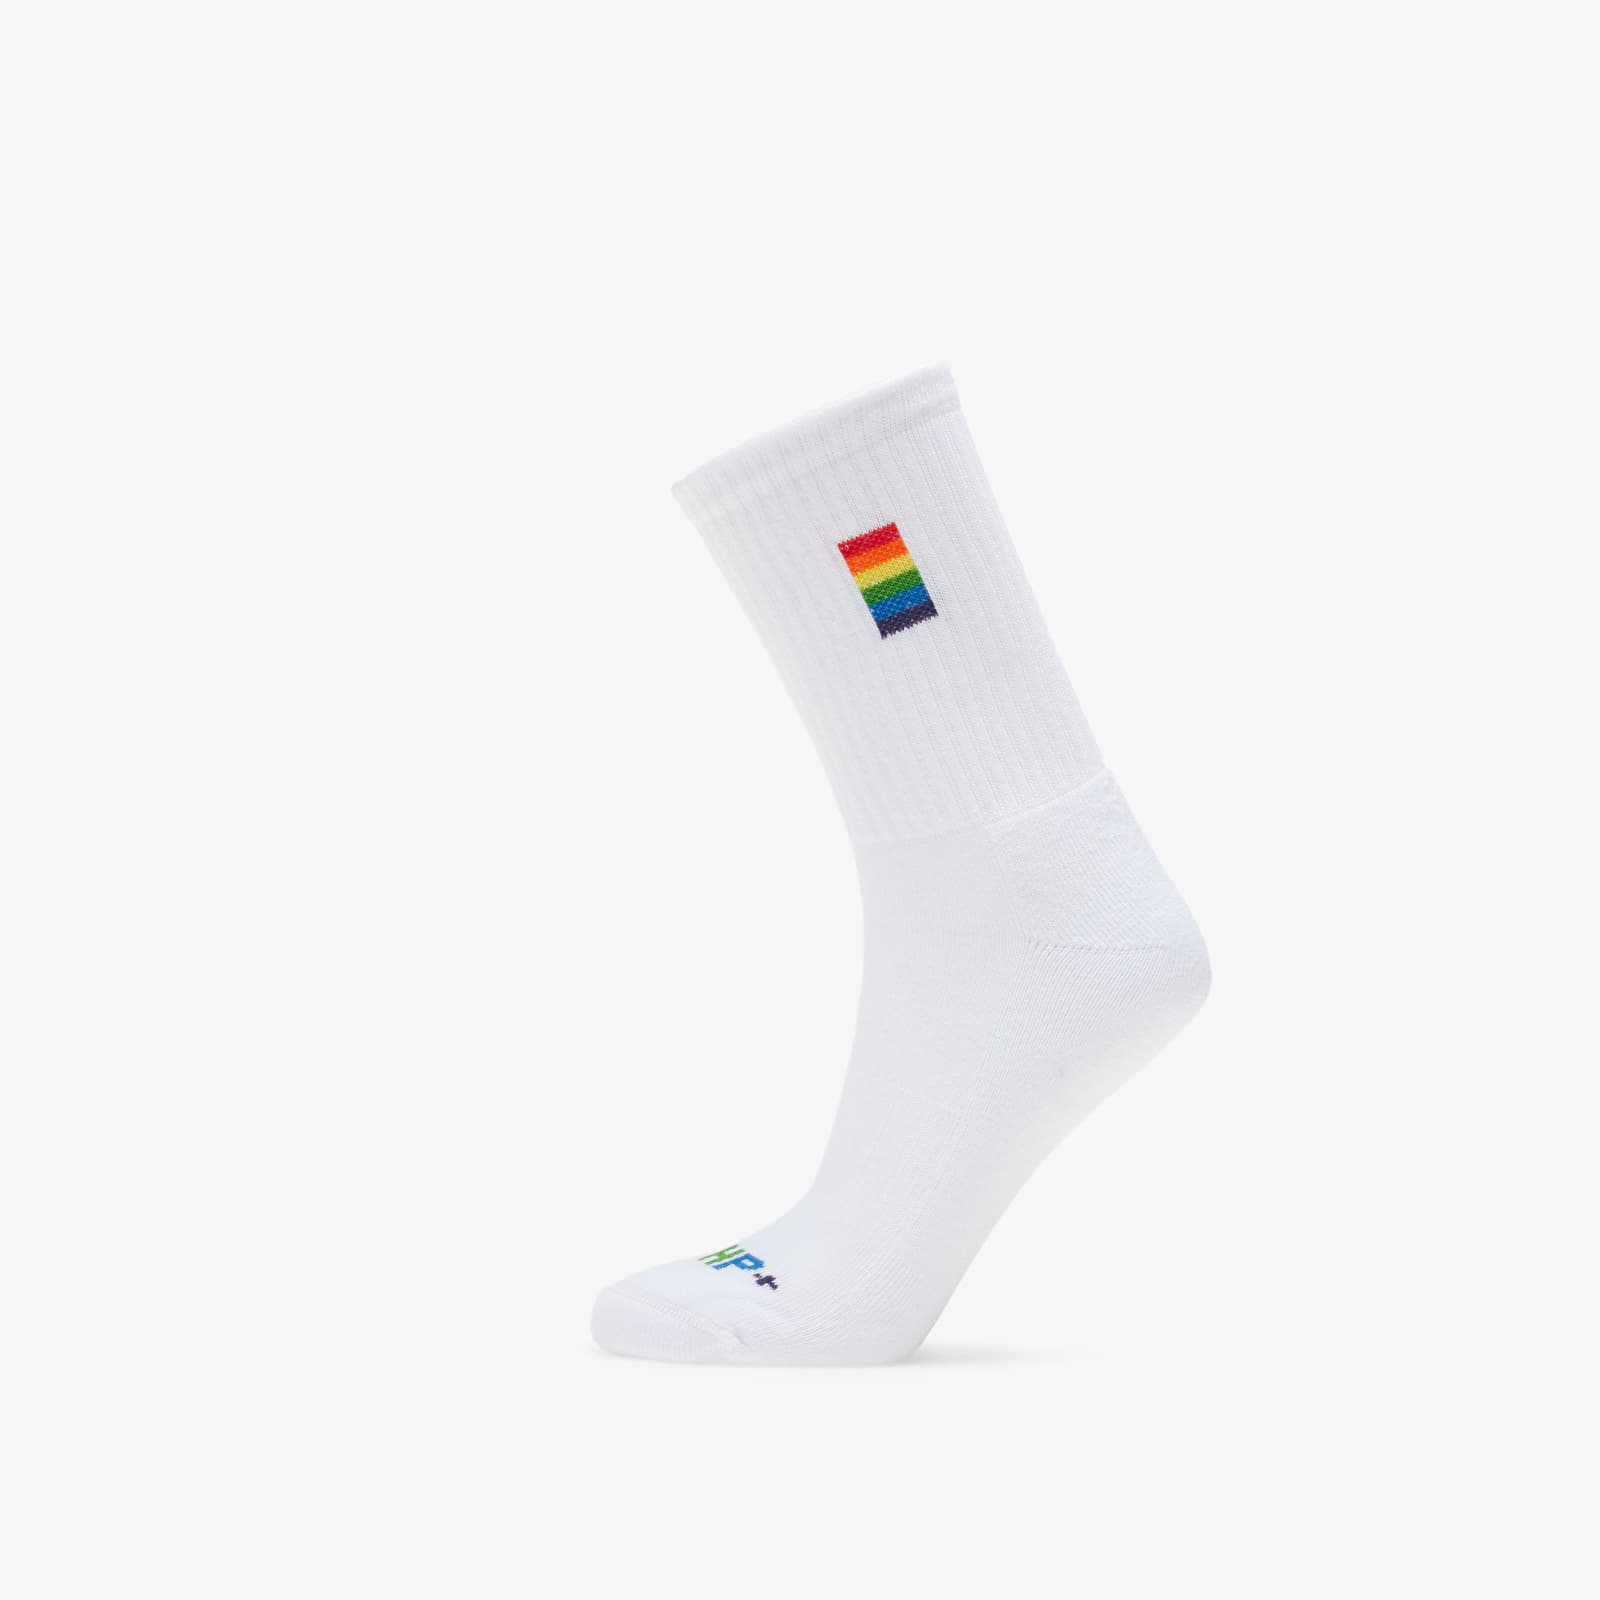 Skarpetki Footshop PRIDE Socks 3-pack White